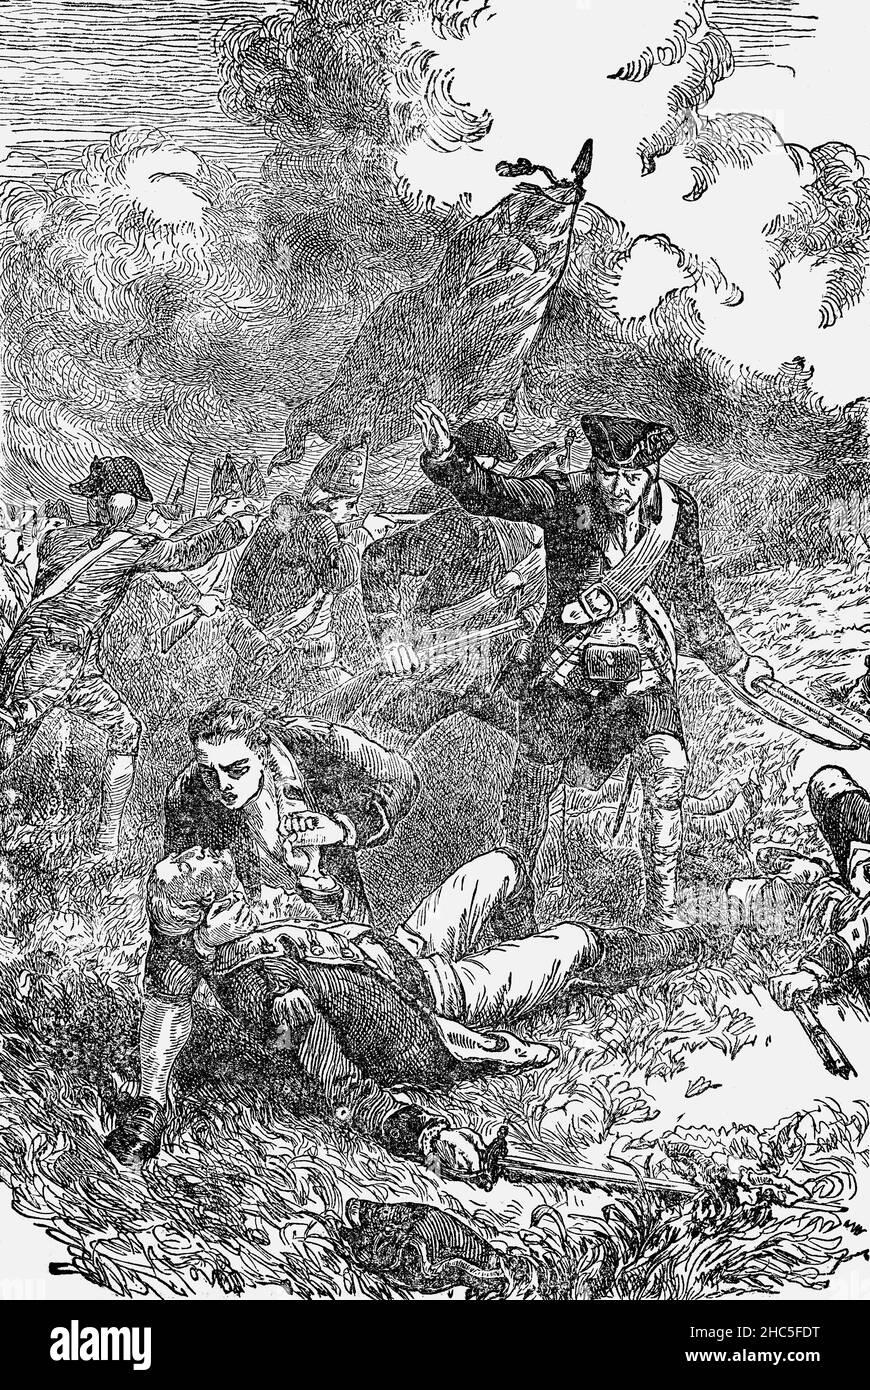 Un'illustrazione di fine 19th secolo della morte del maggiore John Pitcairn (1722-1775) era un ufficiale del servizio marino che era stitioned a Boston, Massachusetts e ha preso parte alle battaglie di Lexington e di Concord, che hanno segnato l'inizio della rivoluzione americana. Alla battaglia di Bunker Hill nei pressi di Charlestown, Massachusetts, due mesi dopo, comandò una forza di riserva di circa 300 Marines e condusse i suoi uomini sulla collina verso la posizione americana. Quando entrò nelle trincee, fu sparato quattro volte, compresa la ferita finale alla testa, che si diceva fosse stata sparata da un ex schiavo di nome Peter Salem. Foto Stock